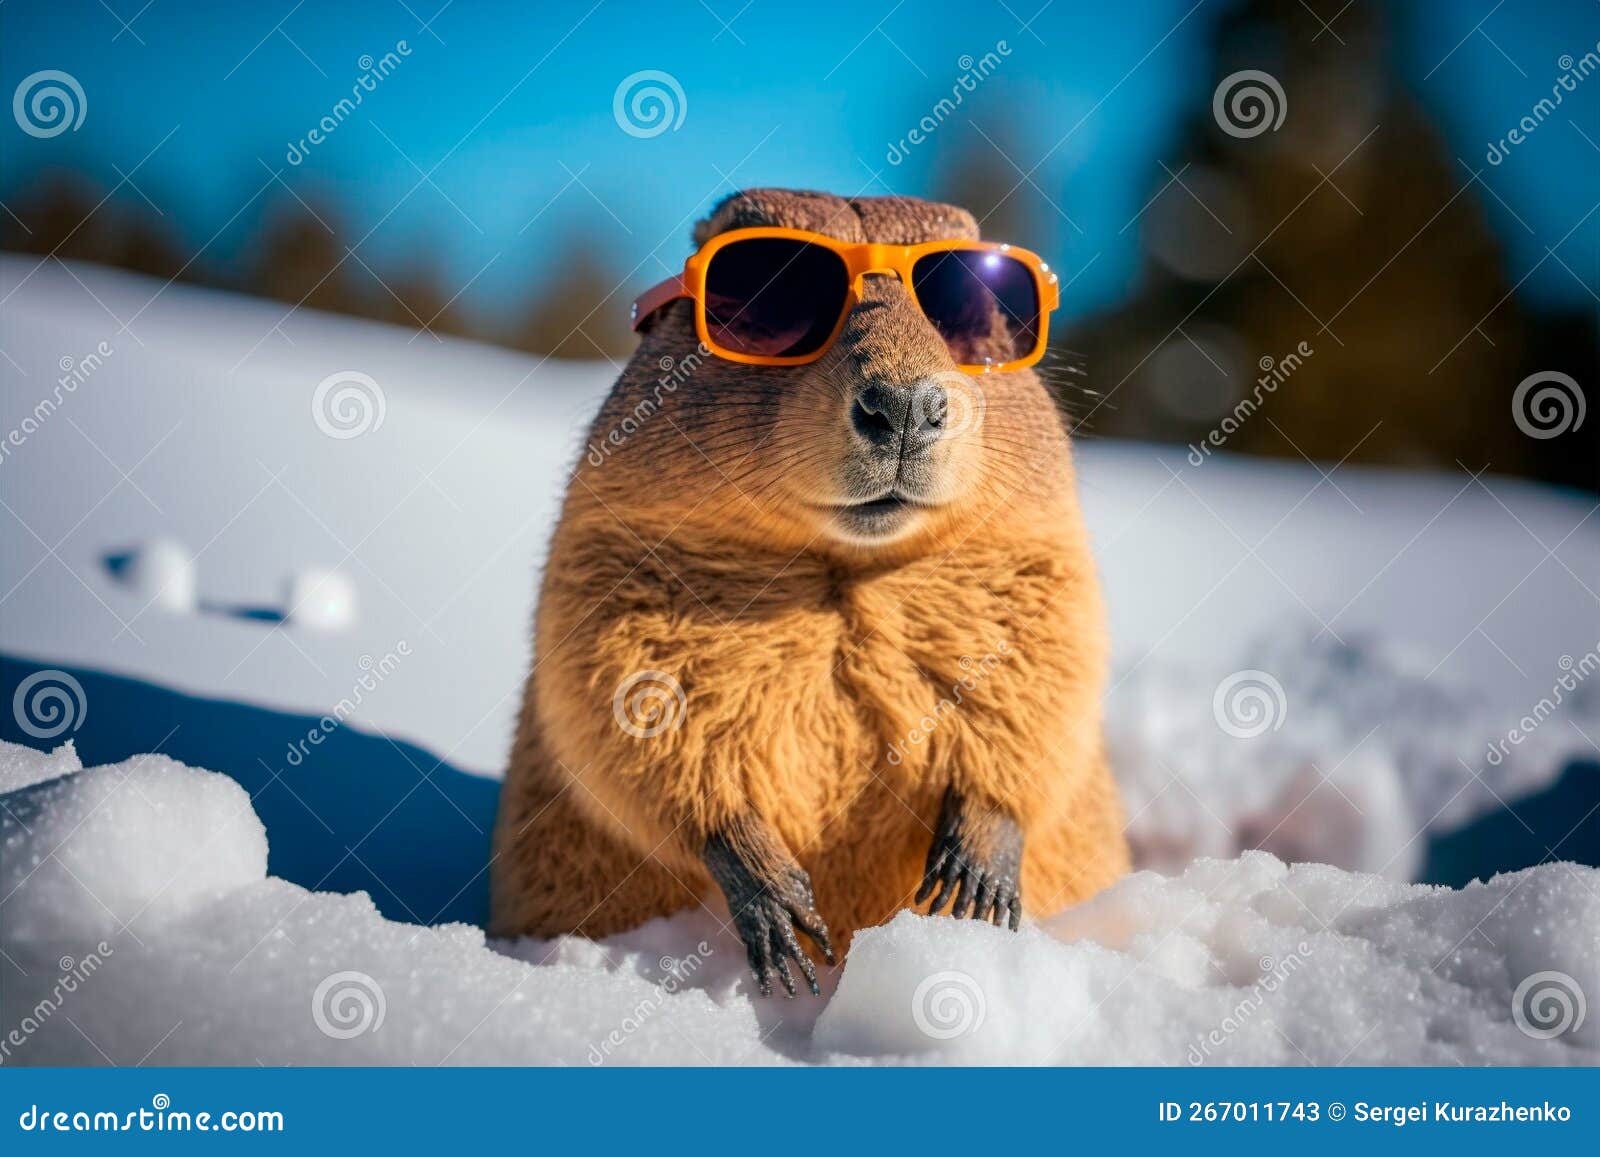 Marmotta in Occhiali Da Sole Sulla Neve. Giornata Di Marmotta. Il